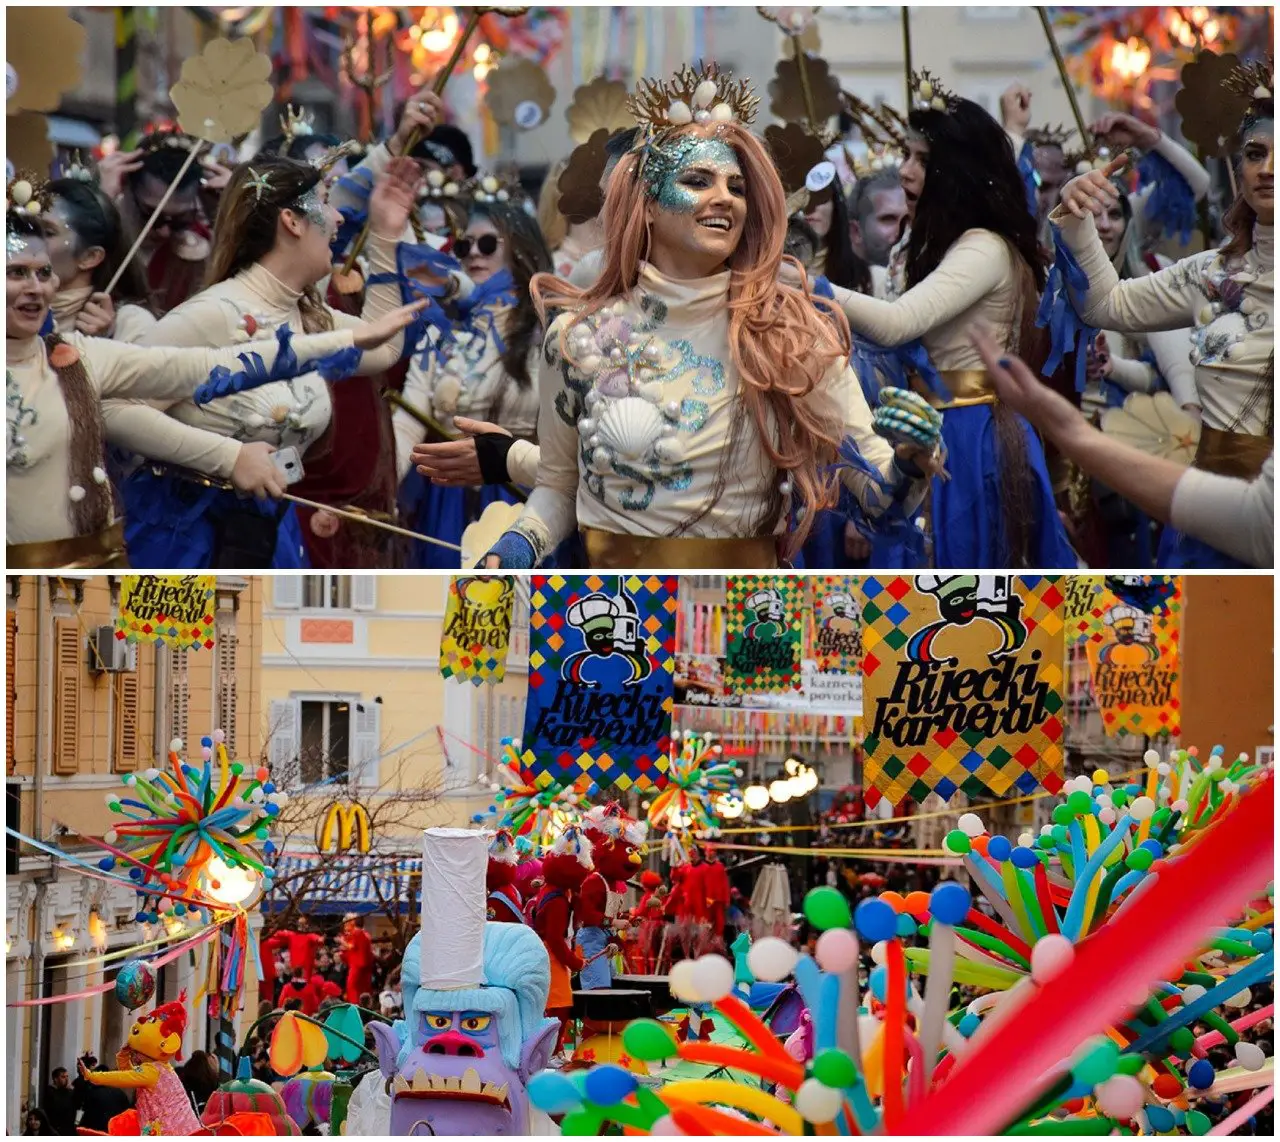 Riječki Karneval, Rijeka Carnival, Croatia